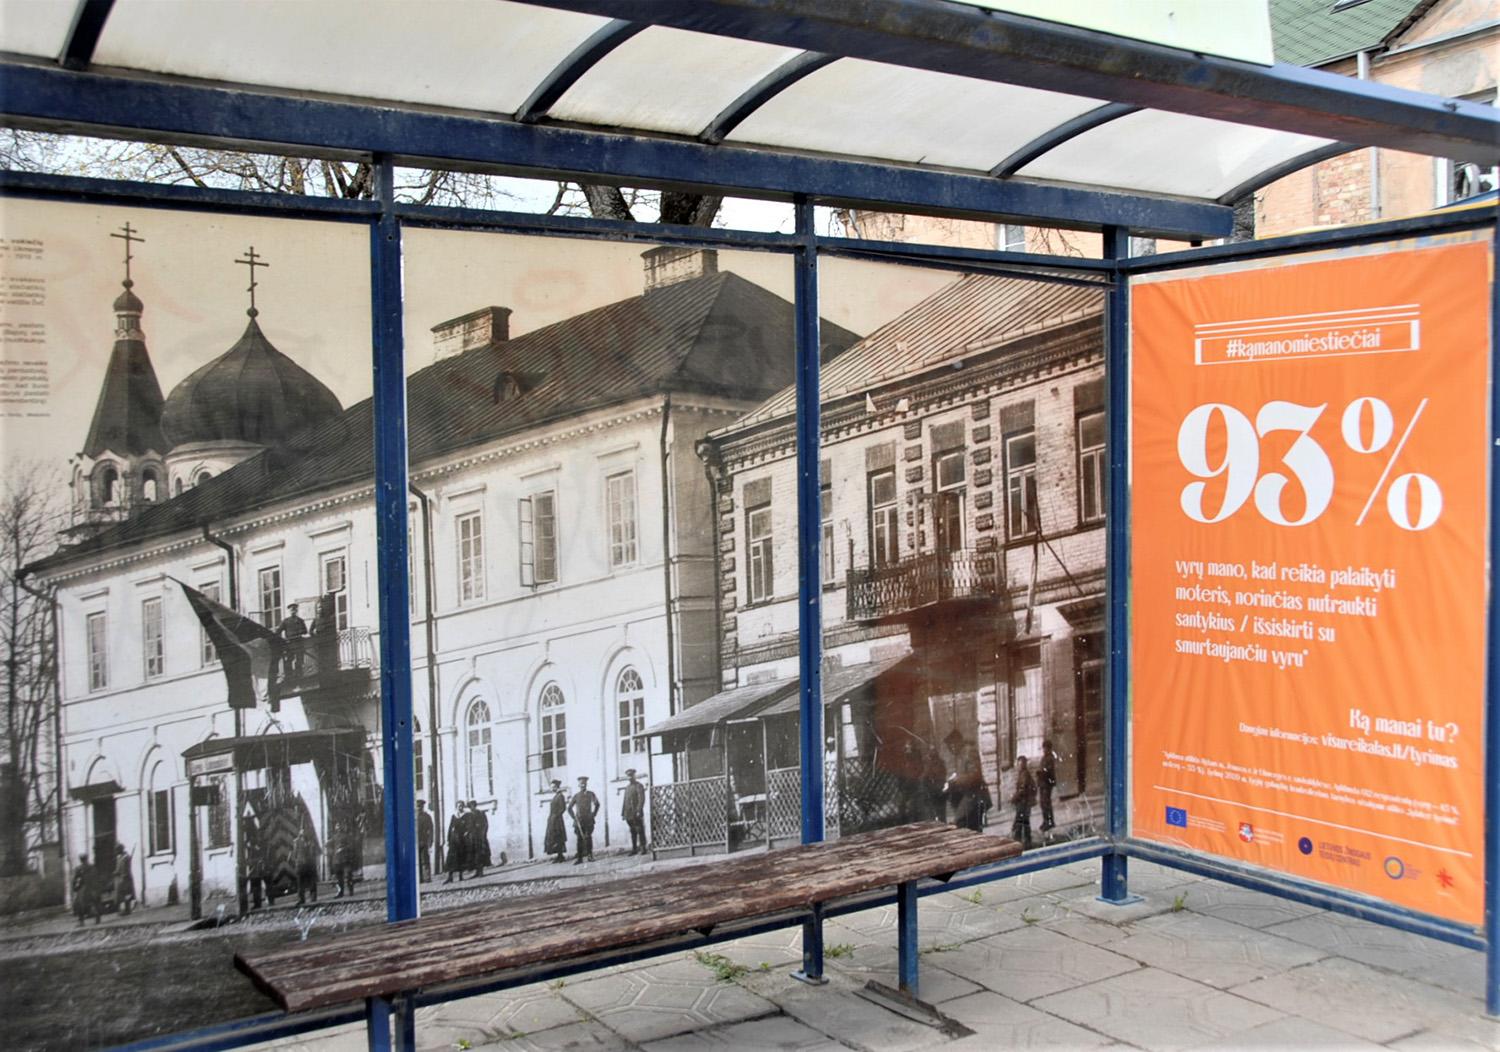 Mieste pradėjo socialinę kampaniją / Ukmergės autobusų stotelėse šviečia socialinės akcijos afišos.